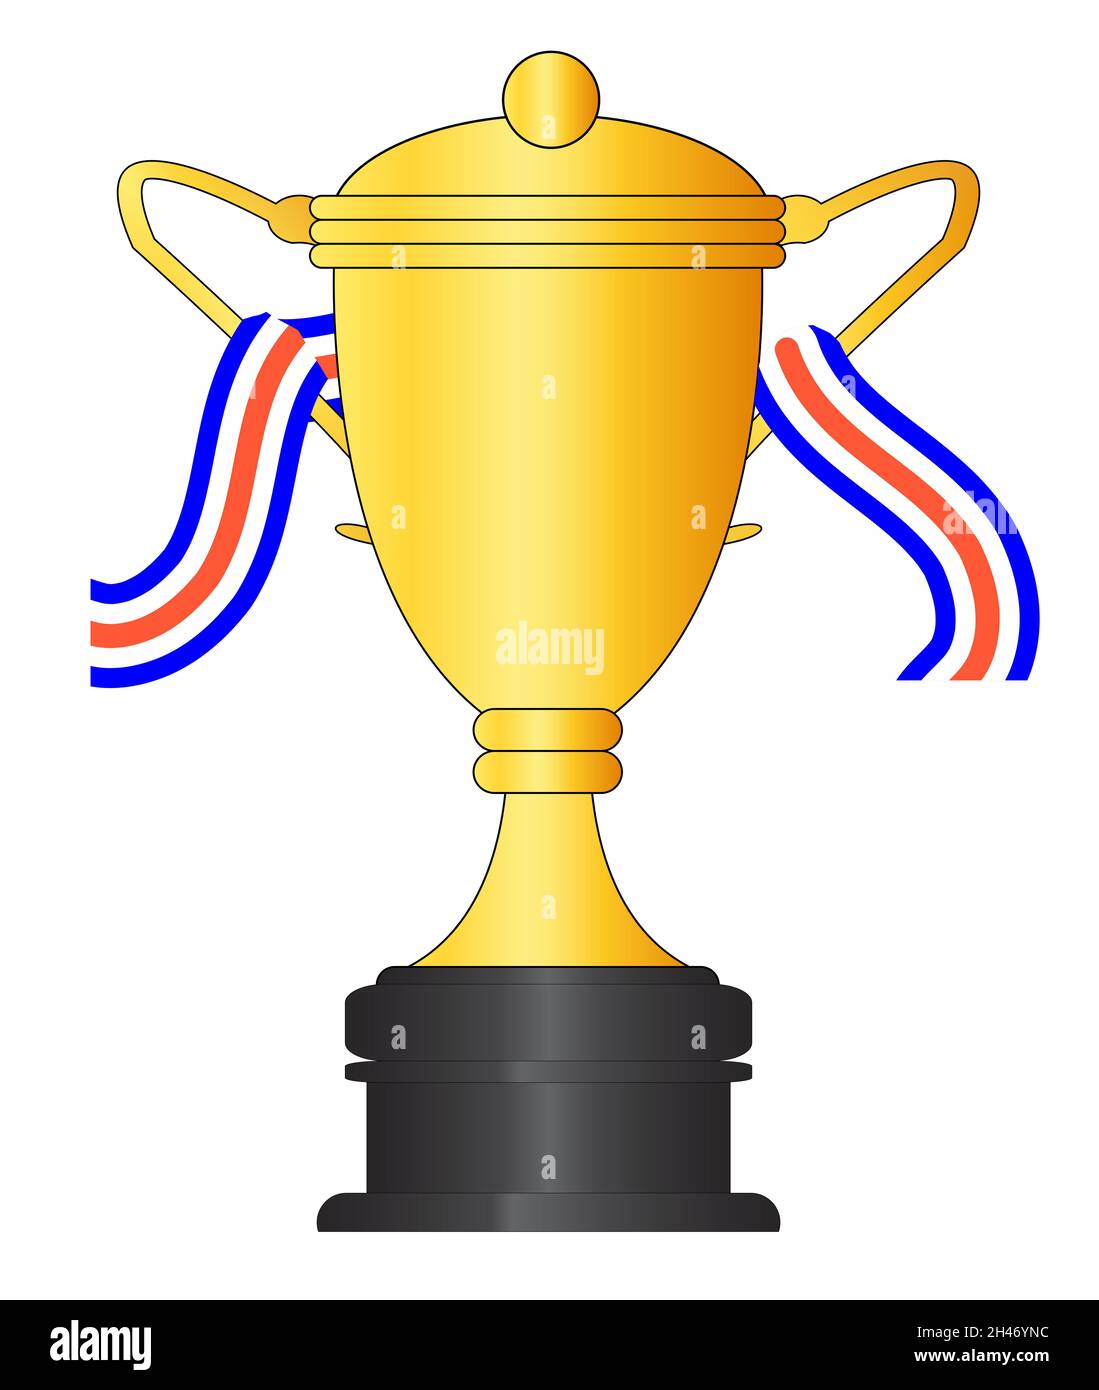 Una gran copa dorada para el ganador con cinta roja blanca y azul aislada  sobre un fondo blanco Fotografía de stock - Alamy